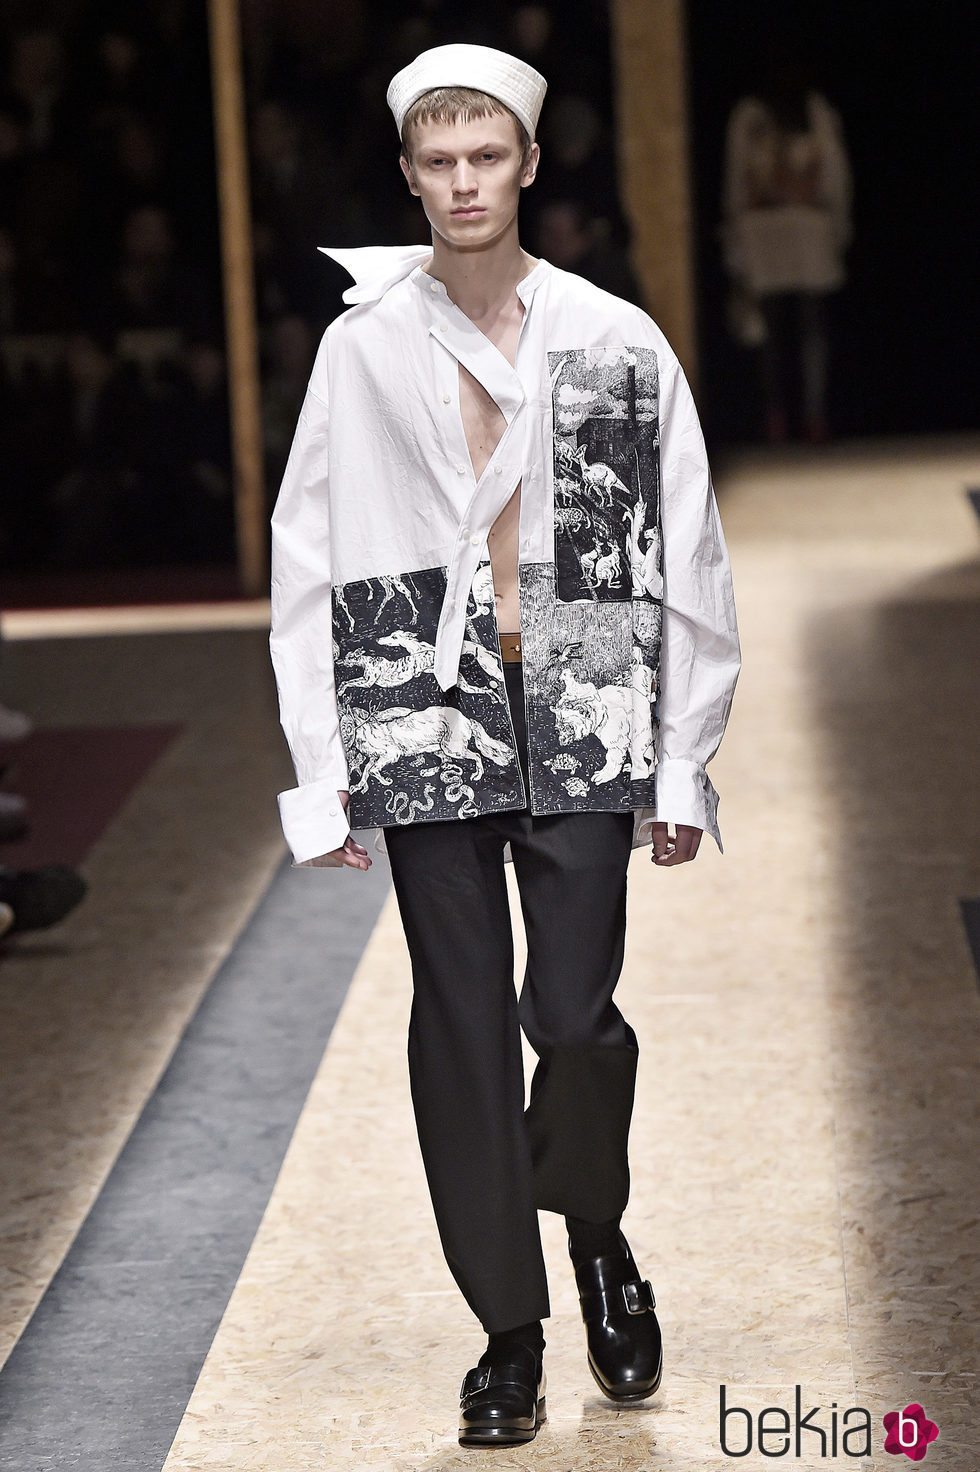 Camisa de estilo kimono blanca con estampado fantasía para Prada